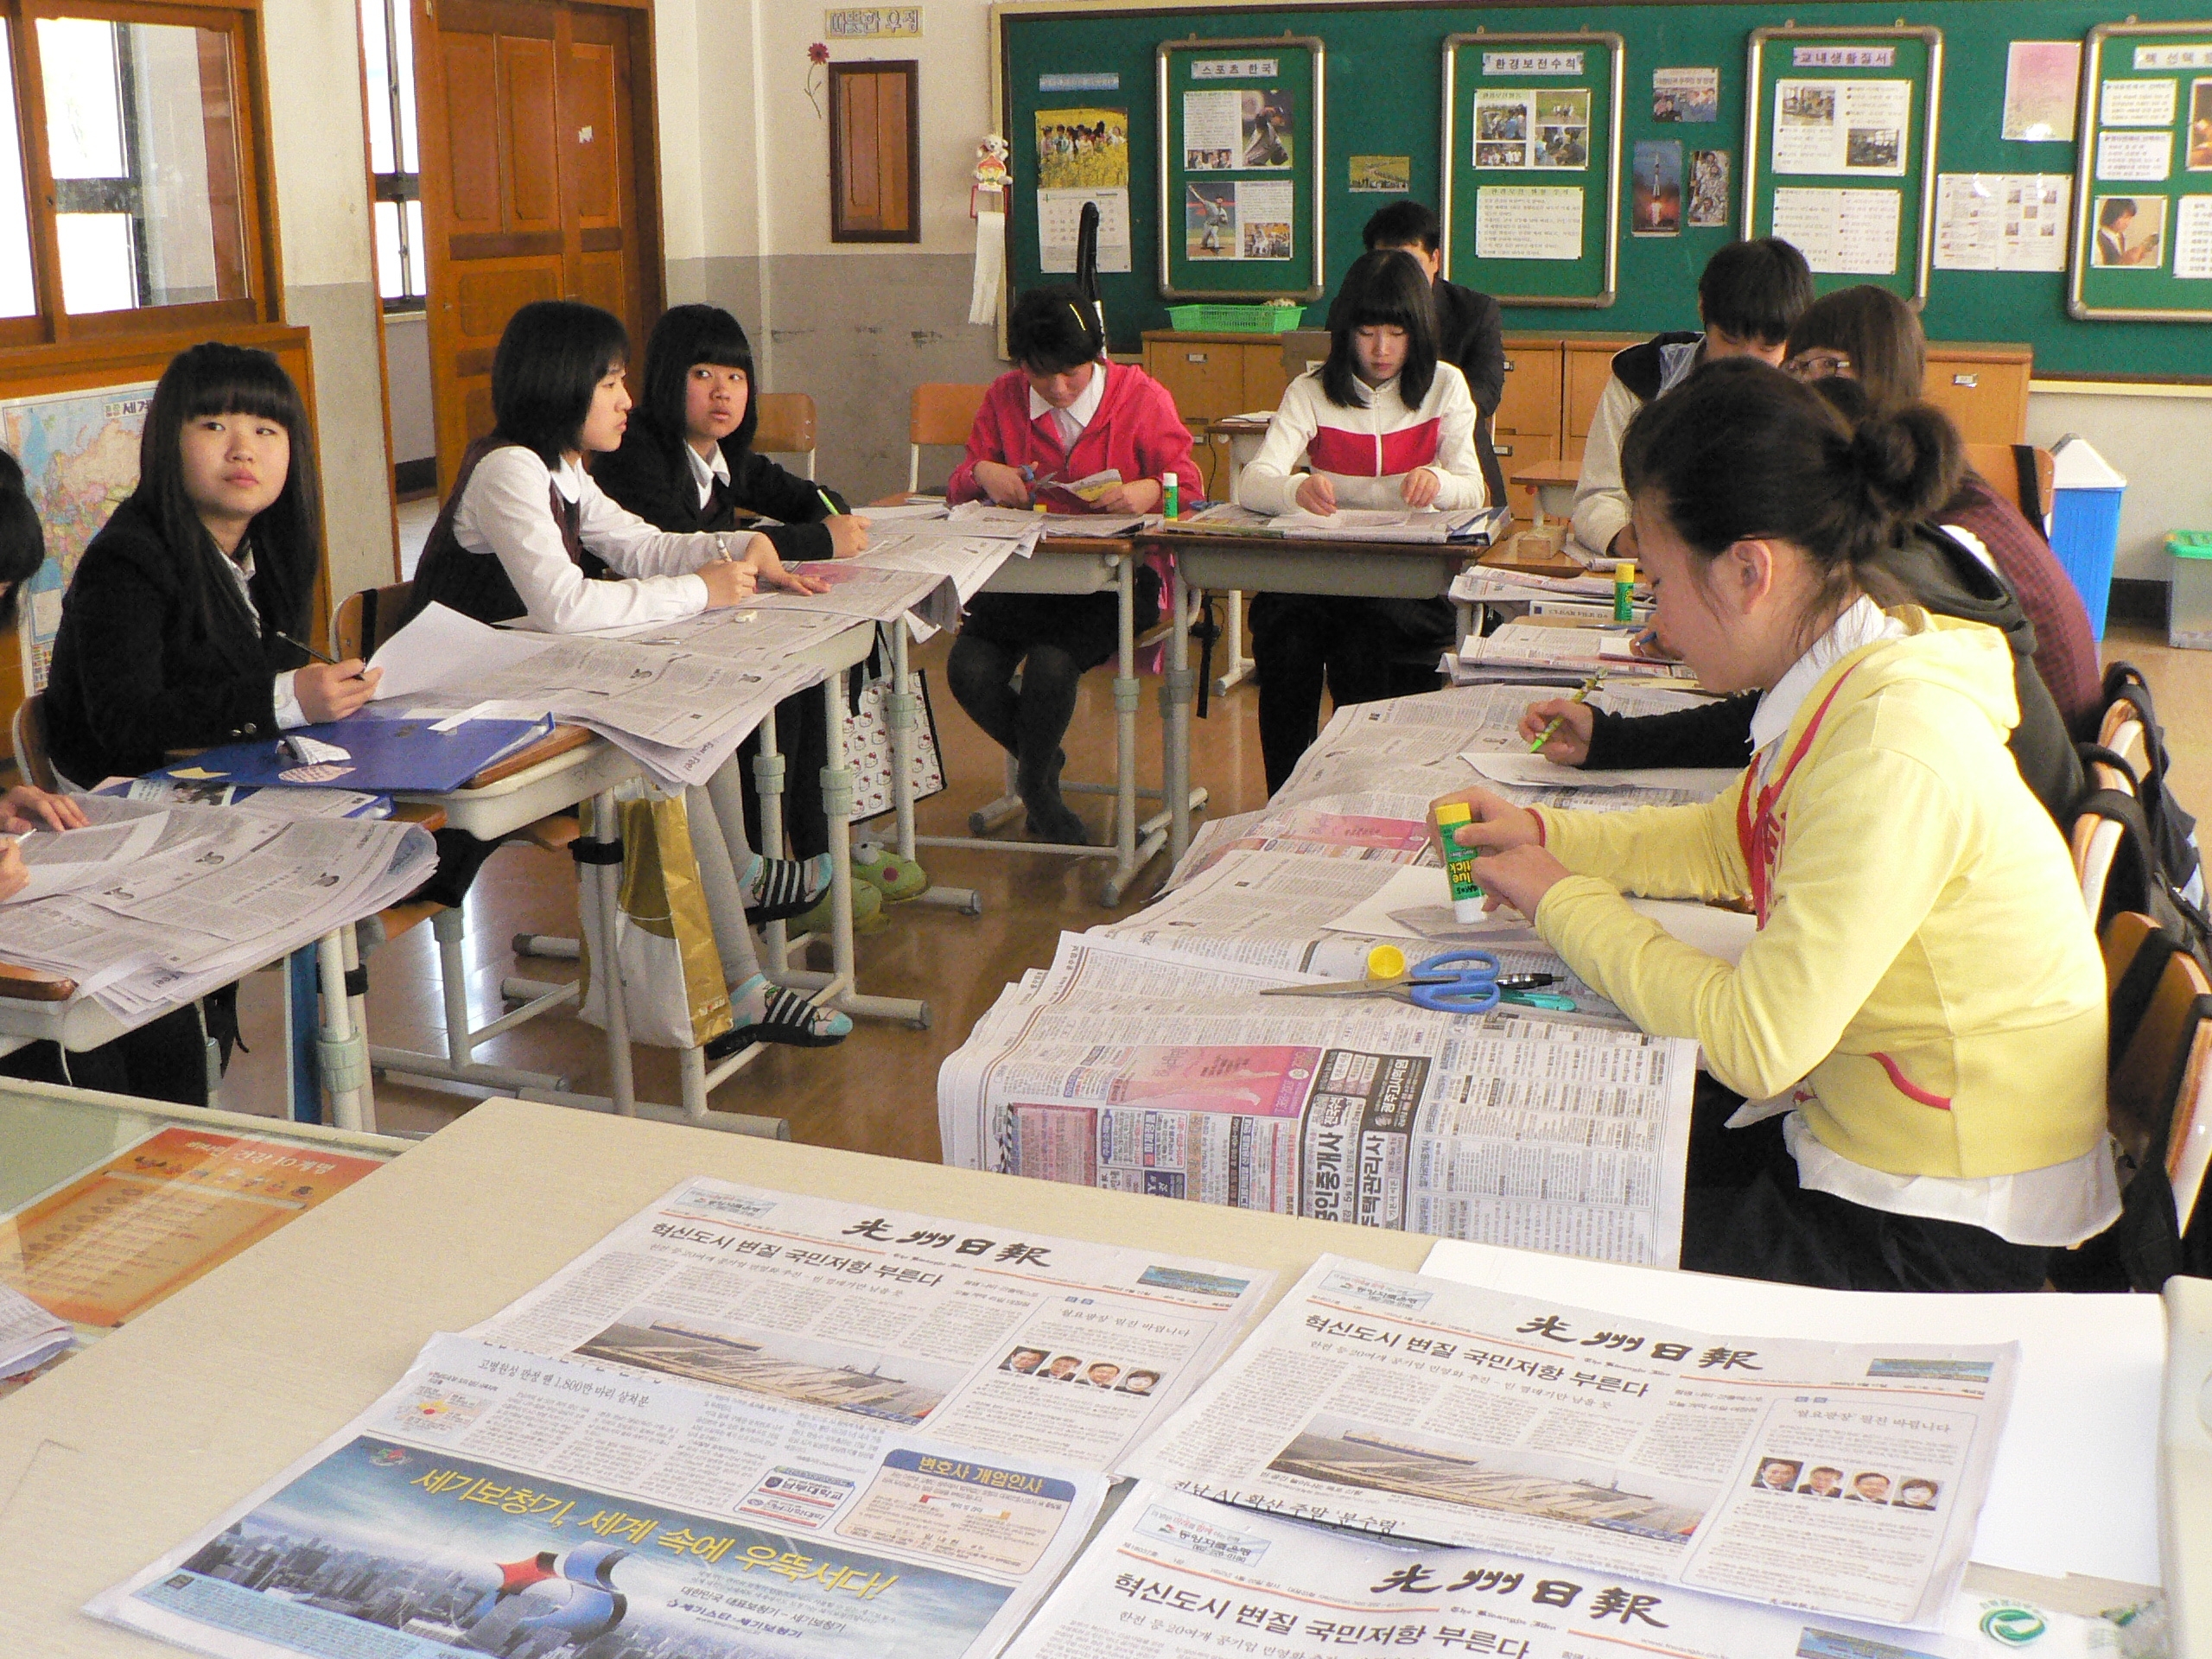 문화부, 신문 활용 교육 확산 위해 3년간 385억 원 지원- 신문을 활용한 초등학교 수업